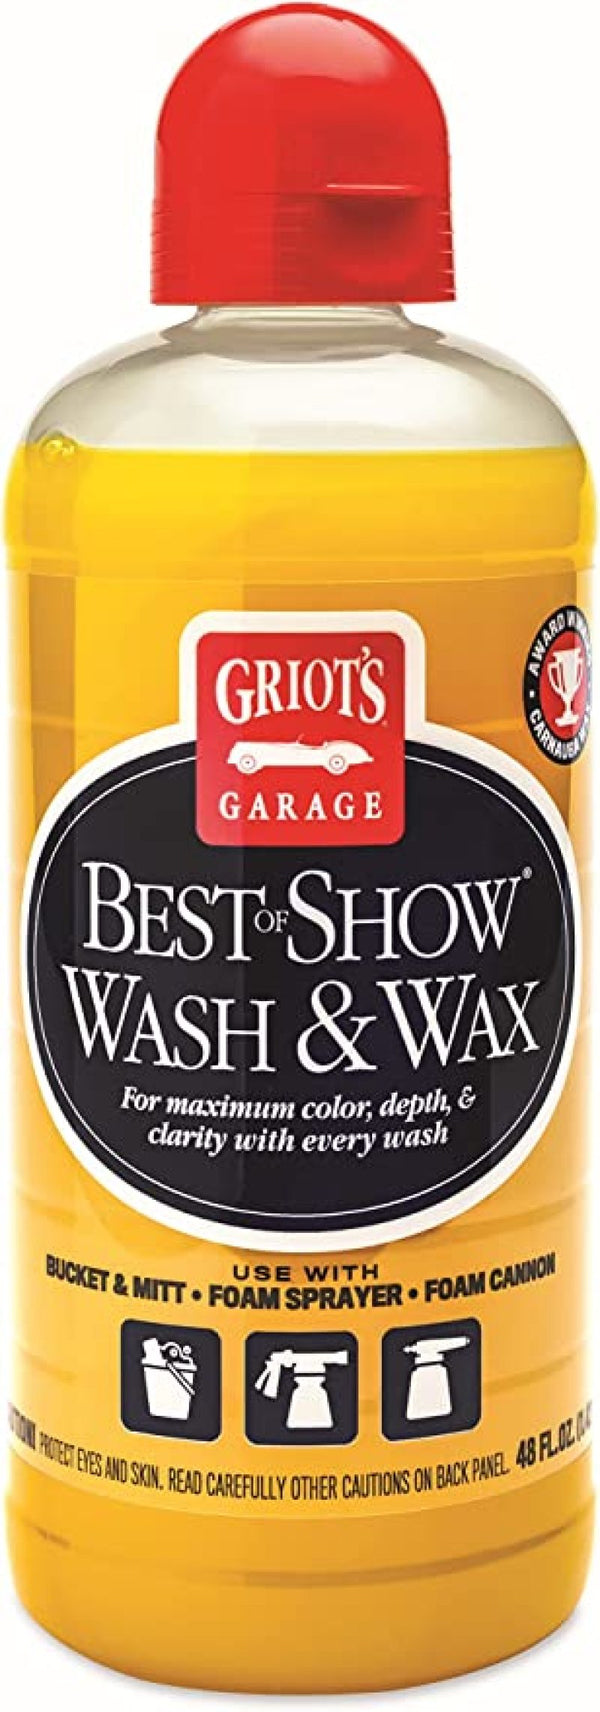 Griots Garage Best of Show Spray Wax - 48oz